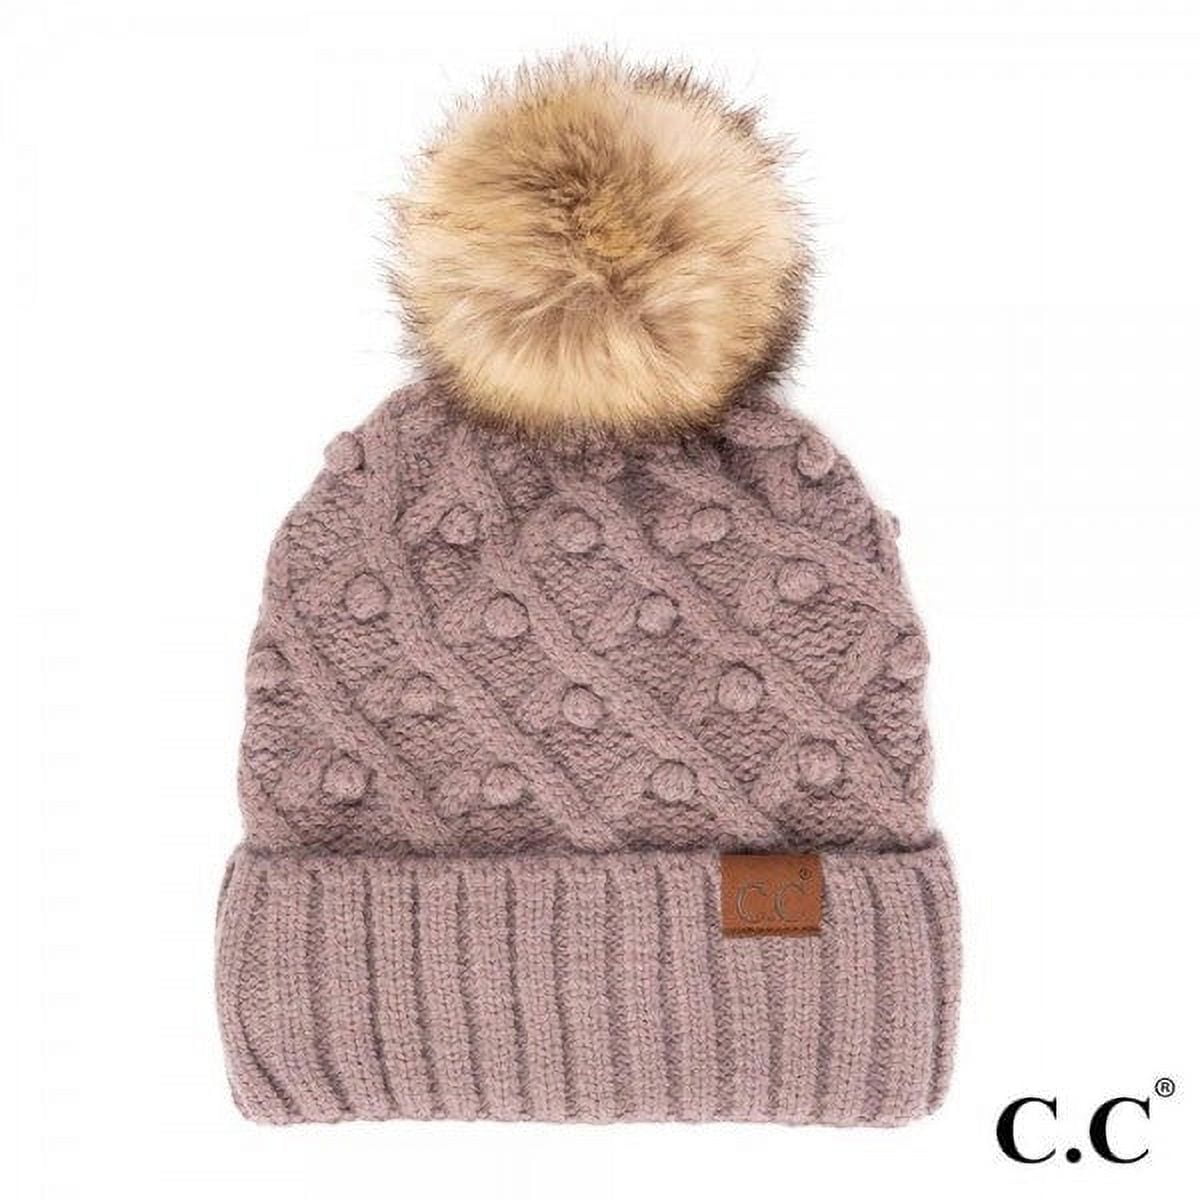 Knit Beanie C.C Hat (Mix Stretch Fleeced Pink) Pom Cap Pom Winter Lined Sherpa Chunky